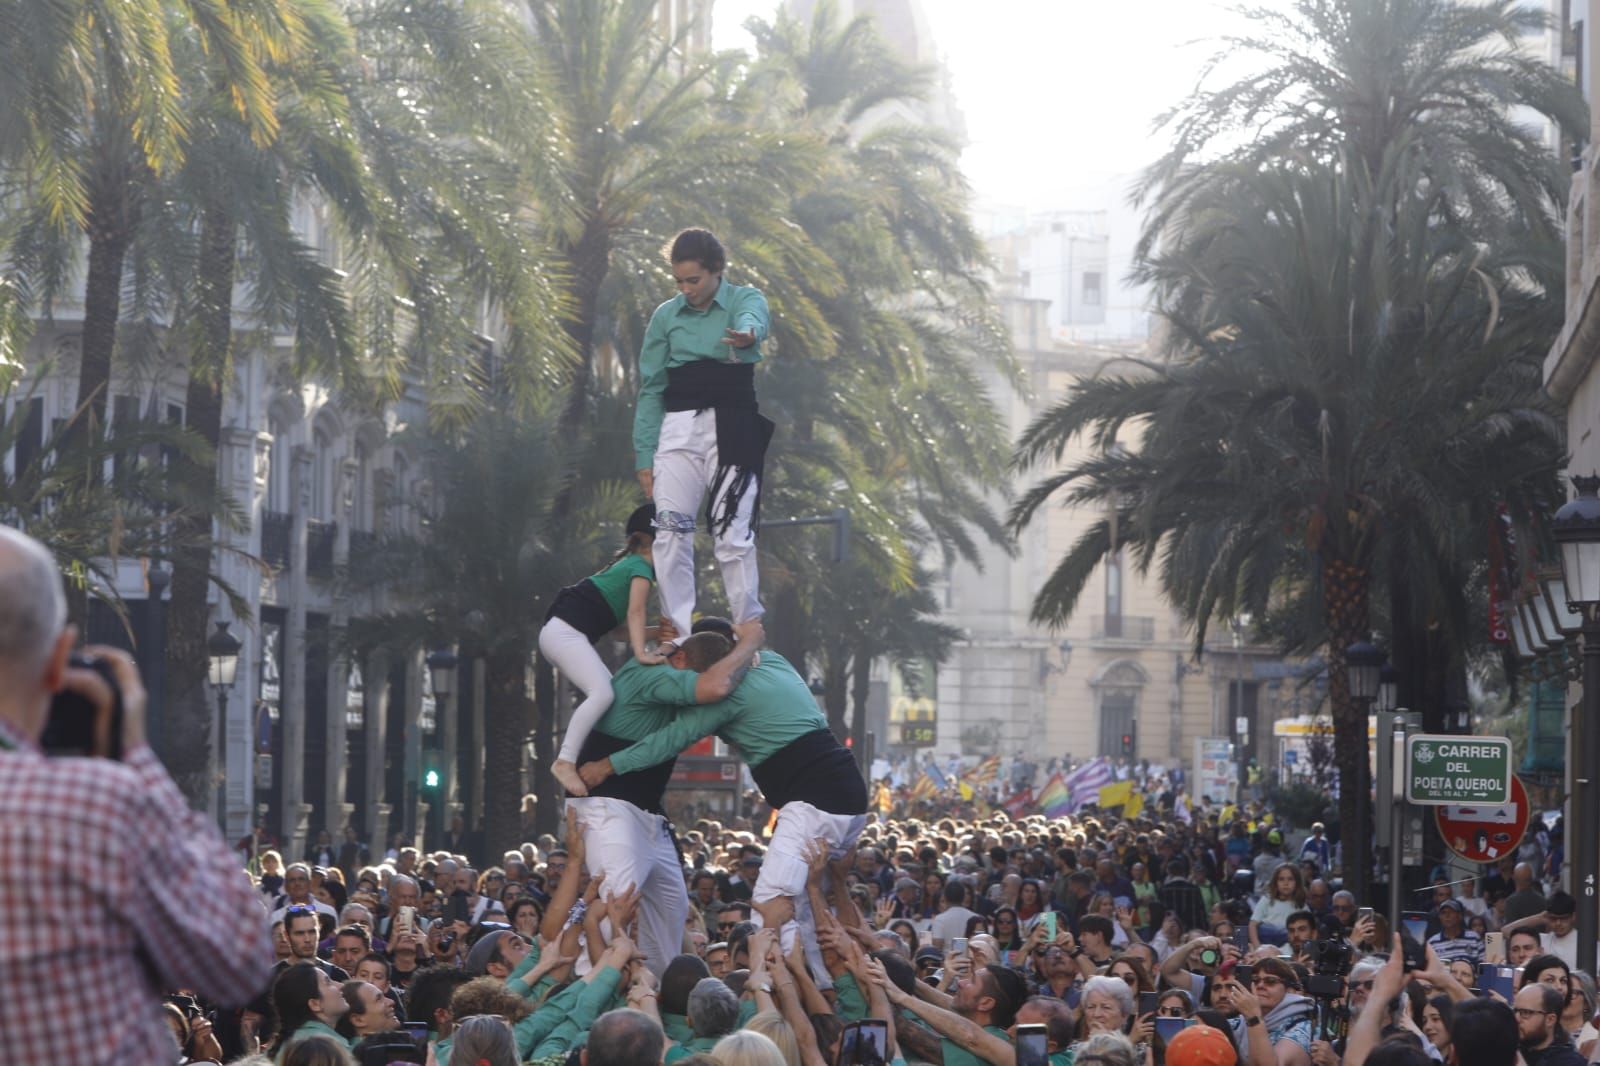 Manifestación en València para conmemorar la diada del 25 de abril